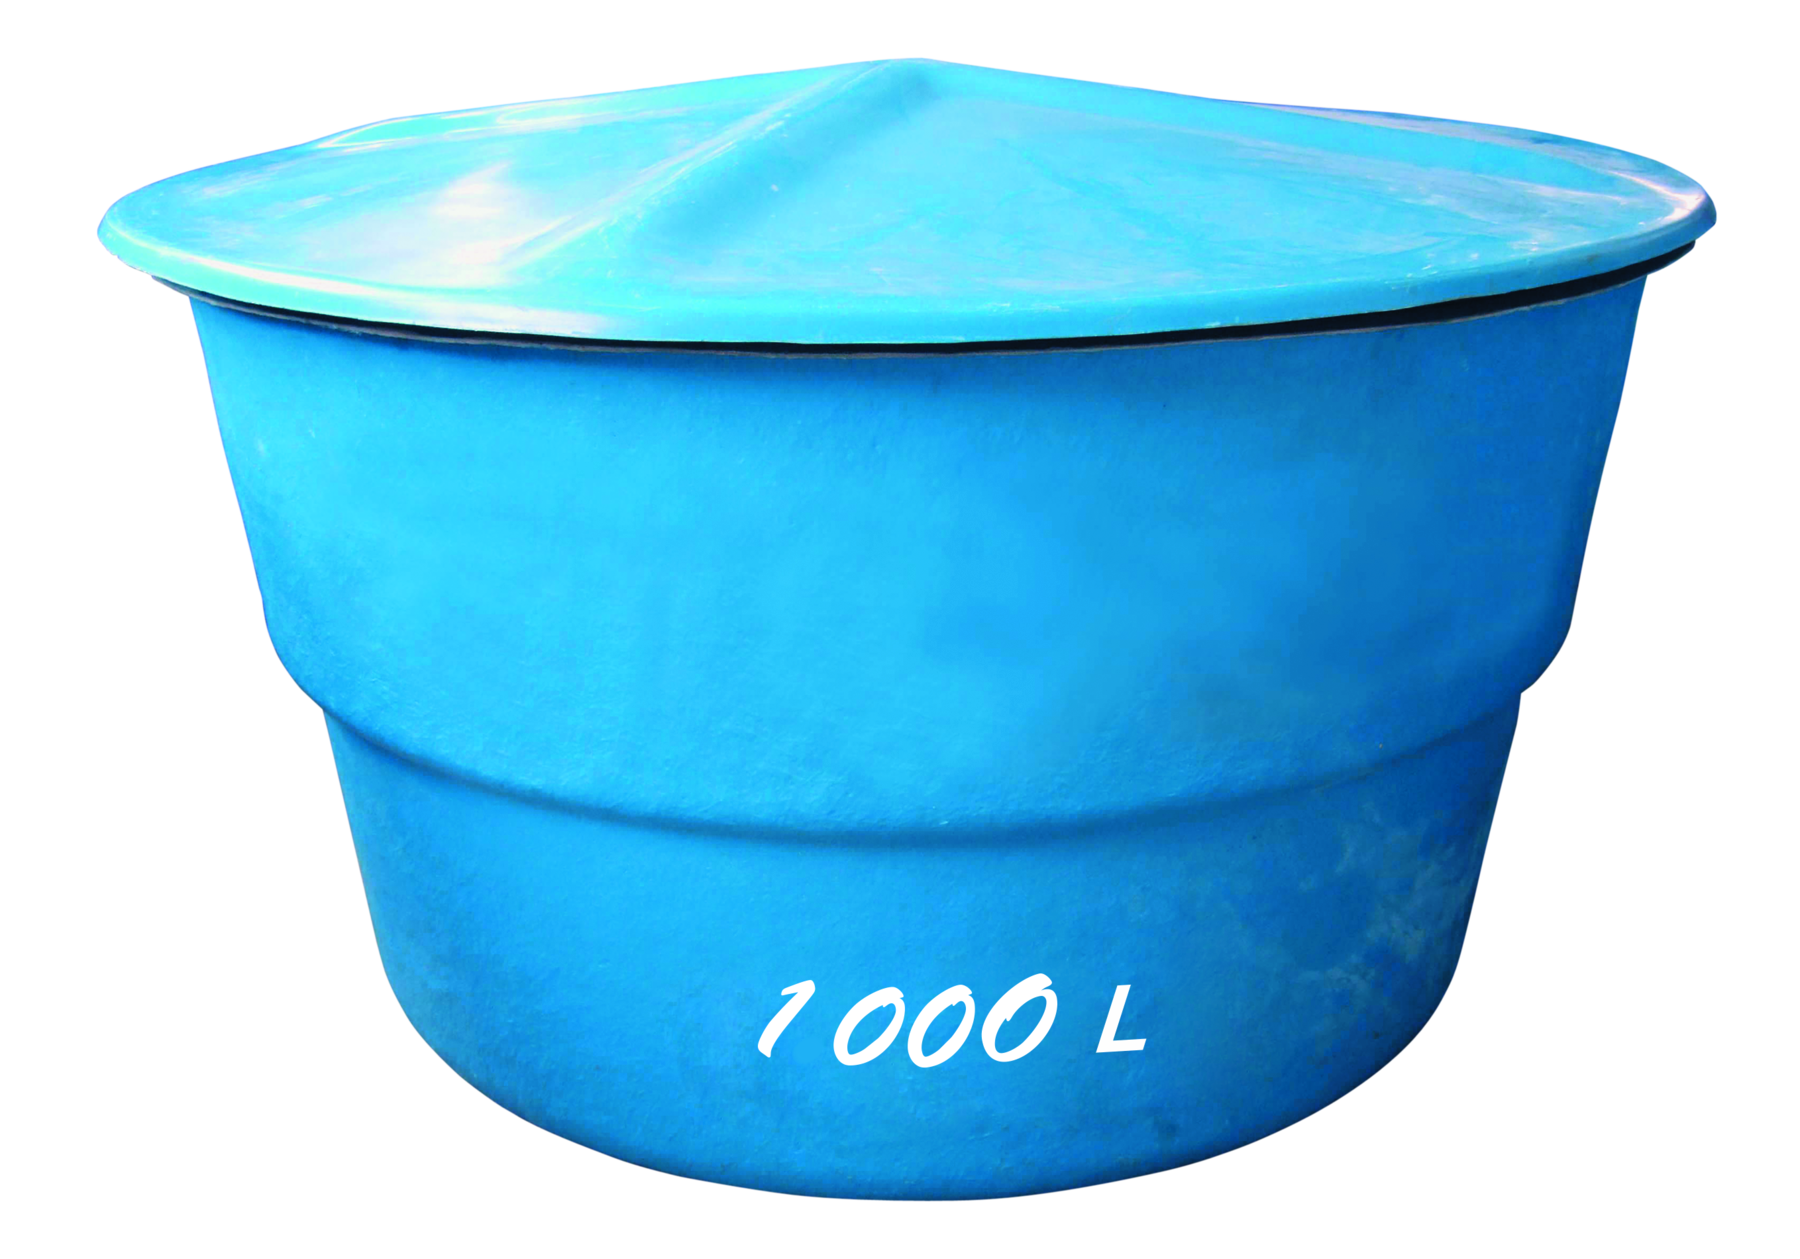 Fotografia. Caixa-d'água circular, azul, com texto em branco: mil litros.